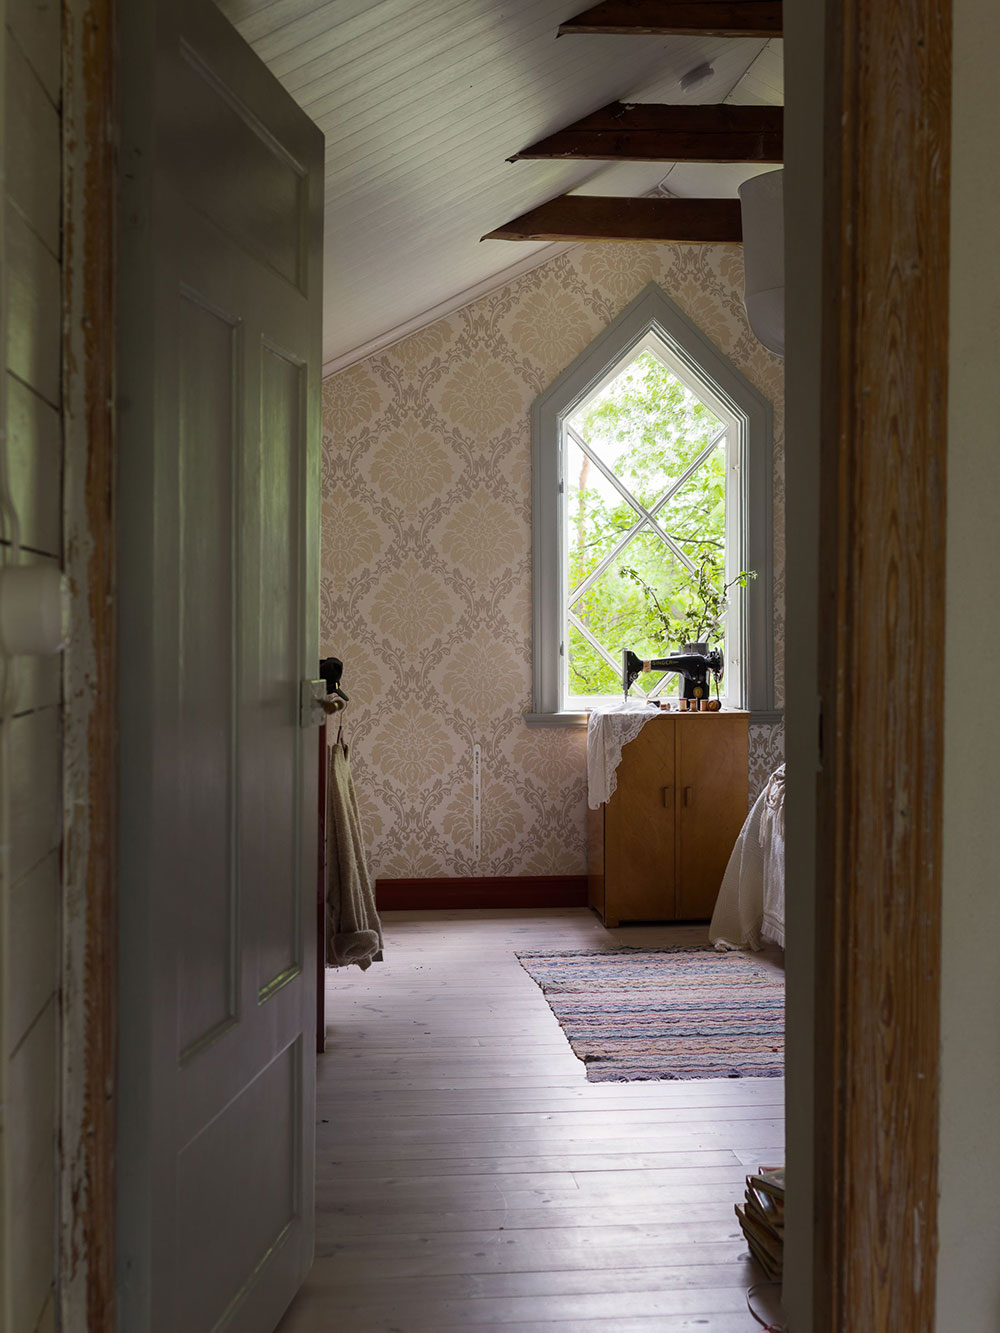 Маленький дачный домик с оригинальными окнами в Швеции дачный домик в, потёртые, царит, атмосфера, типичной, скандинавской, много, винтажа, деревянная, интерьеров, мебель, старая, милые, детали, великолепны, снаружи, внутри, касается, шведской, арочная